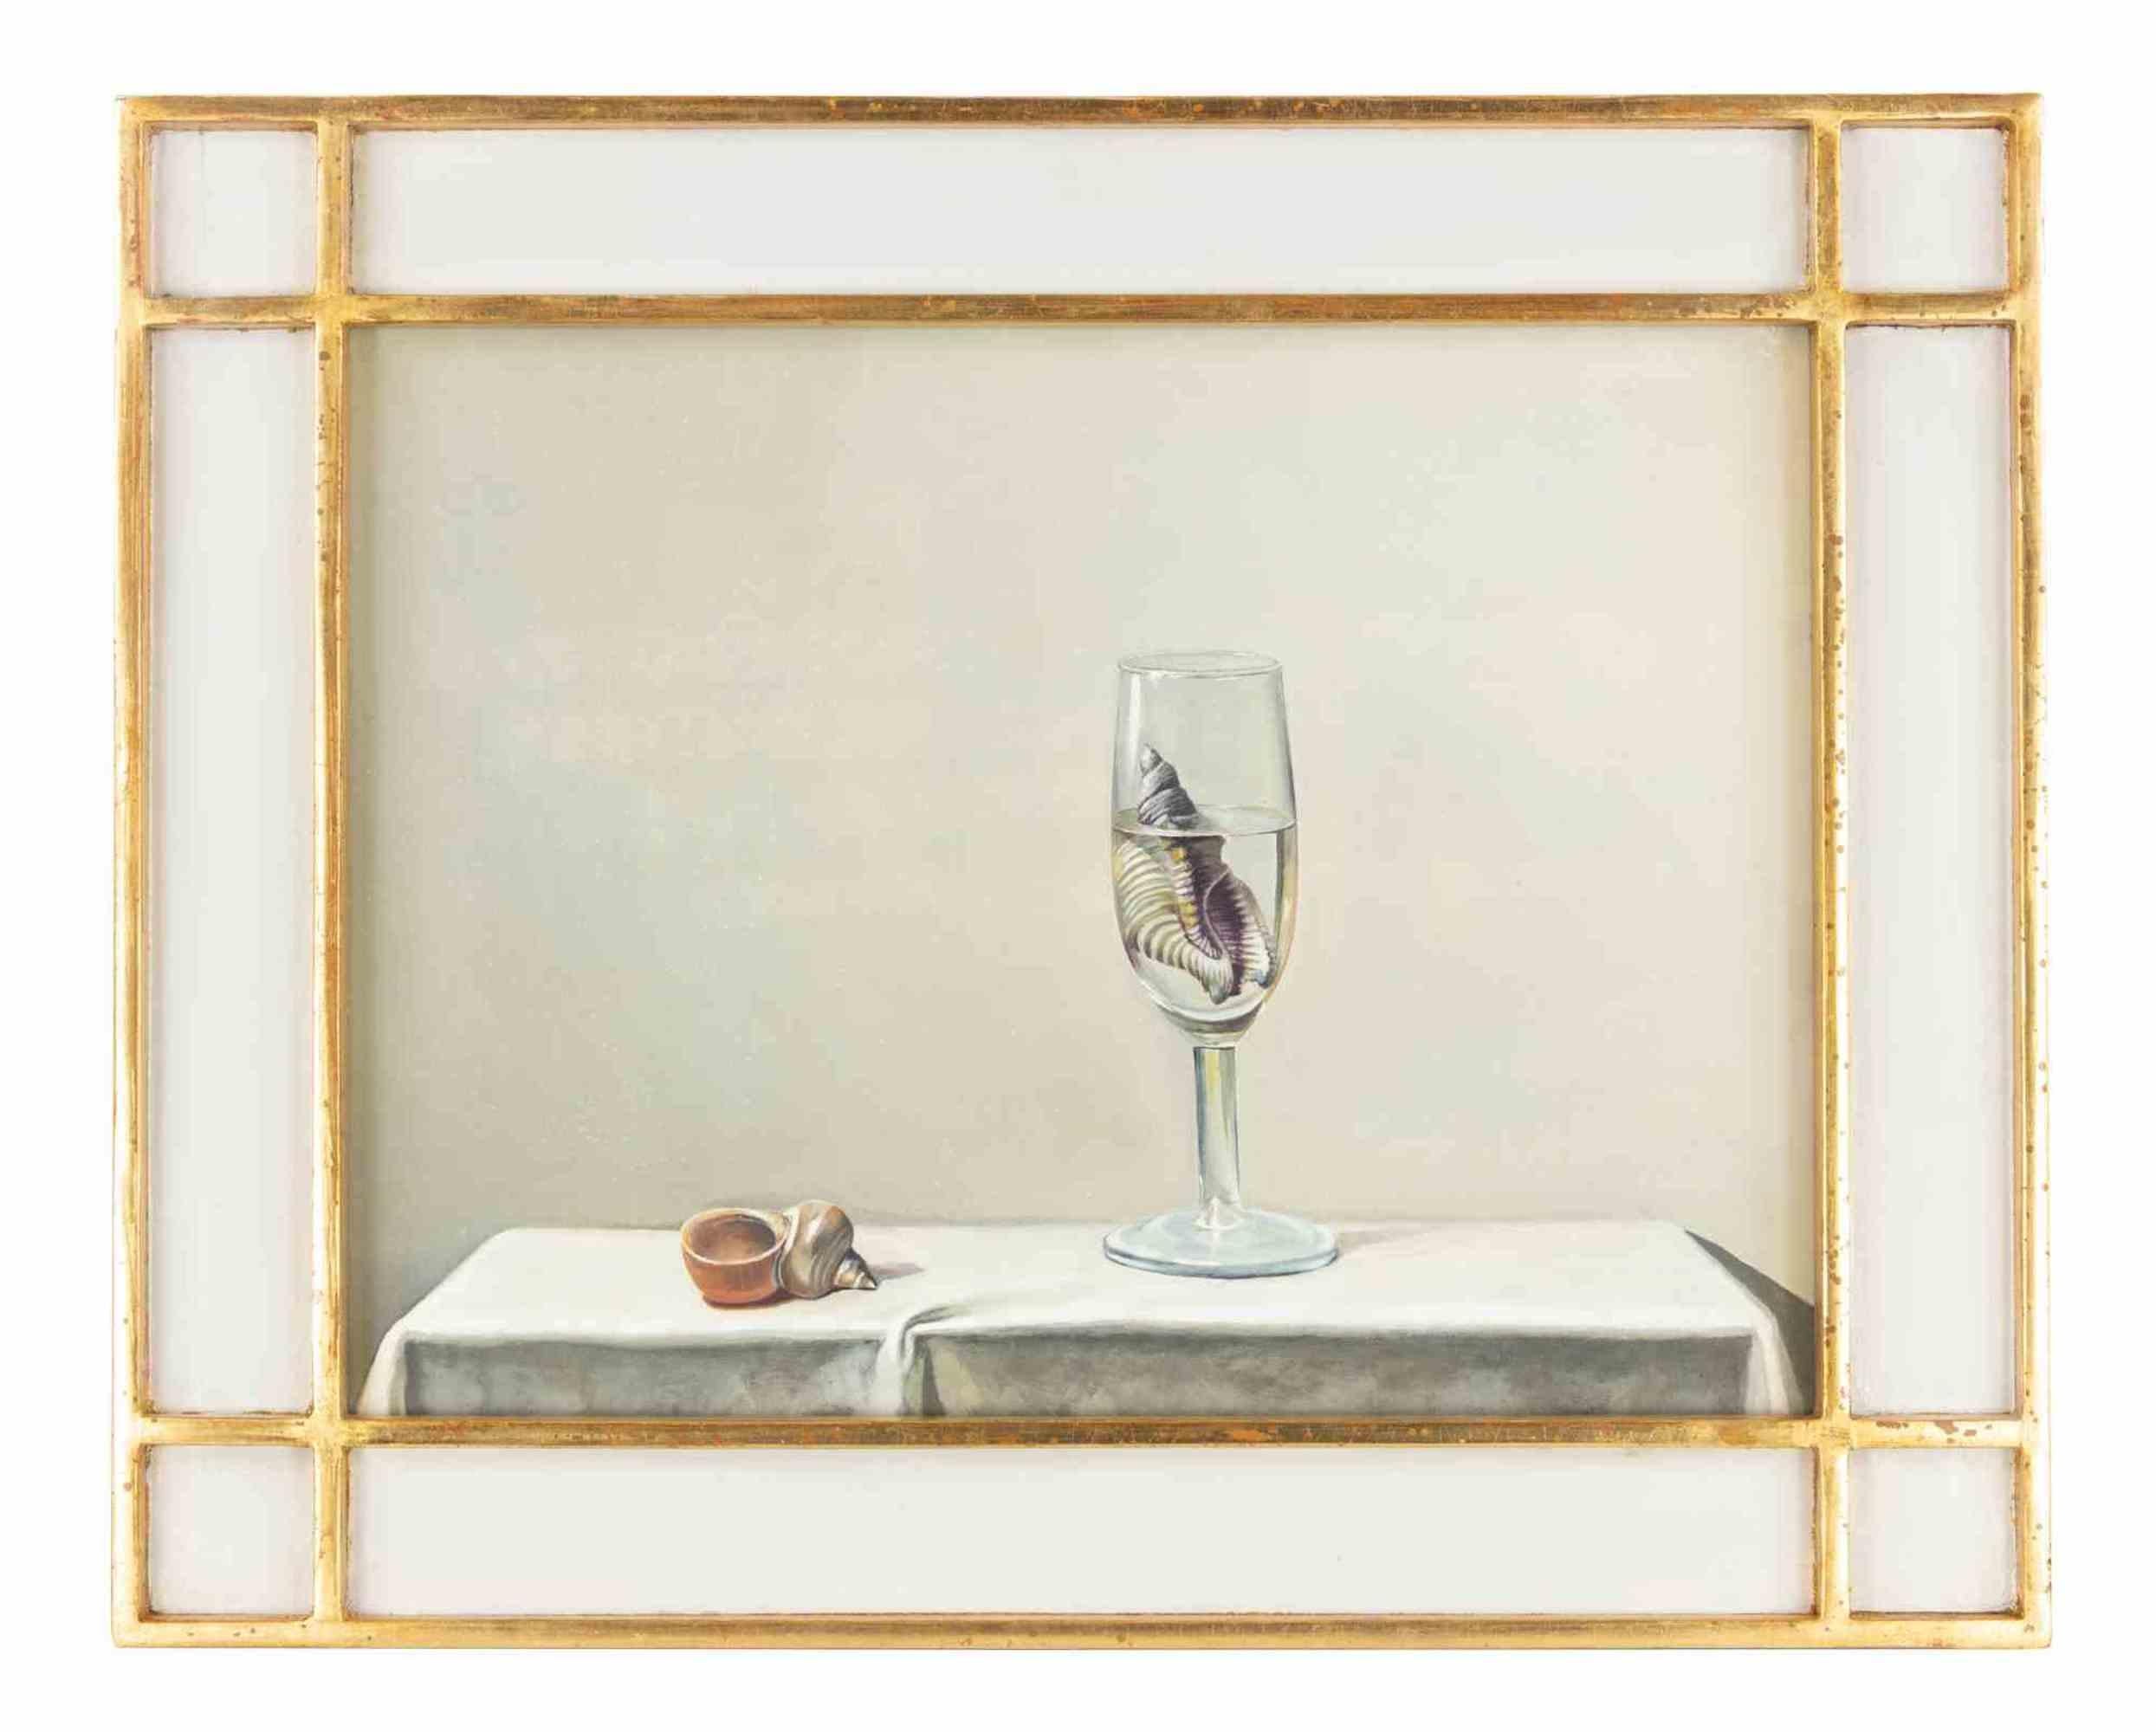 Glass and Shells est une peinture à l'huile réalisée dans les années 2010 par Zhang Wei Guang (Mirror).

Belle peinture à l'huile sur toile. 

Cadre inclus : 40 x 3 x 50 cm


Zhang Wei Guang, également appelé "miroir", est né à Helong Jang, en